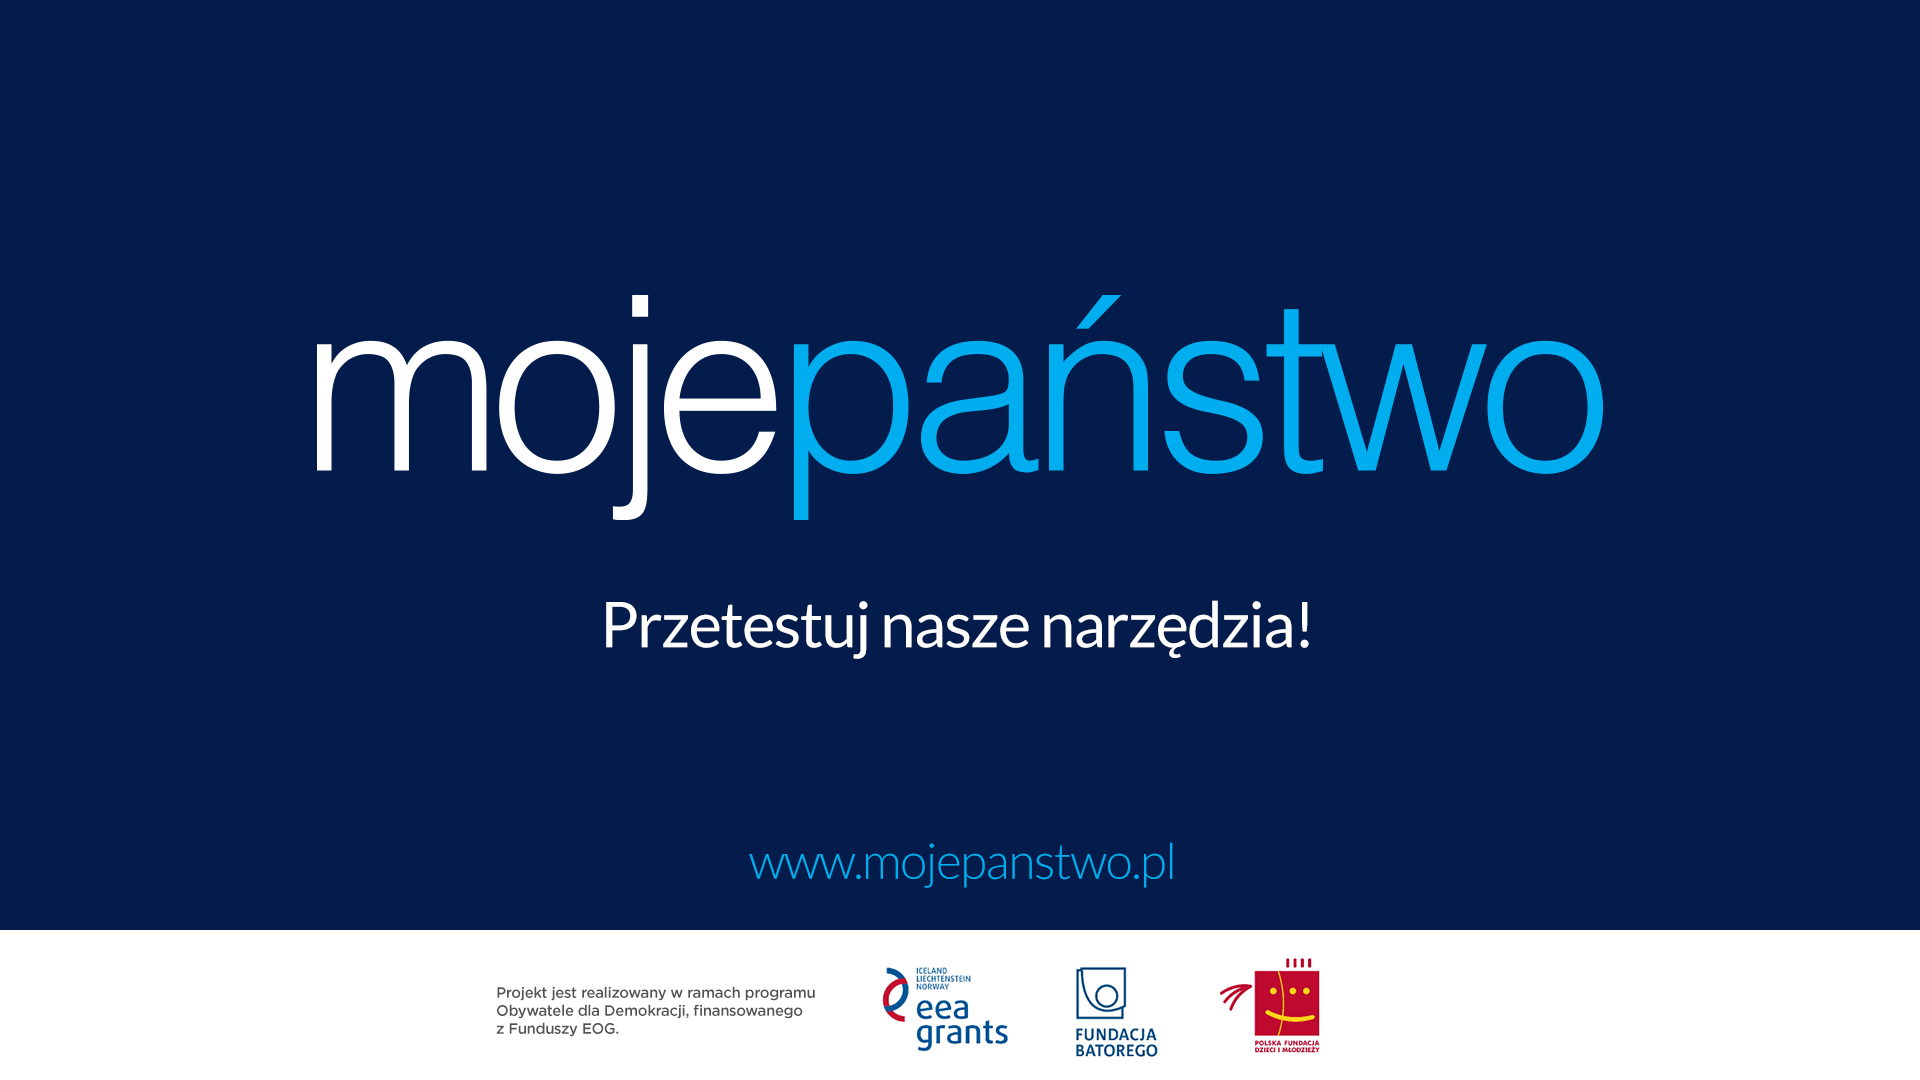 Webinarium – Jak korzystać z danych publicznych na przykładzie mojepanstwo.pl